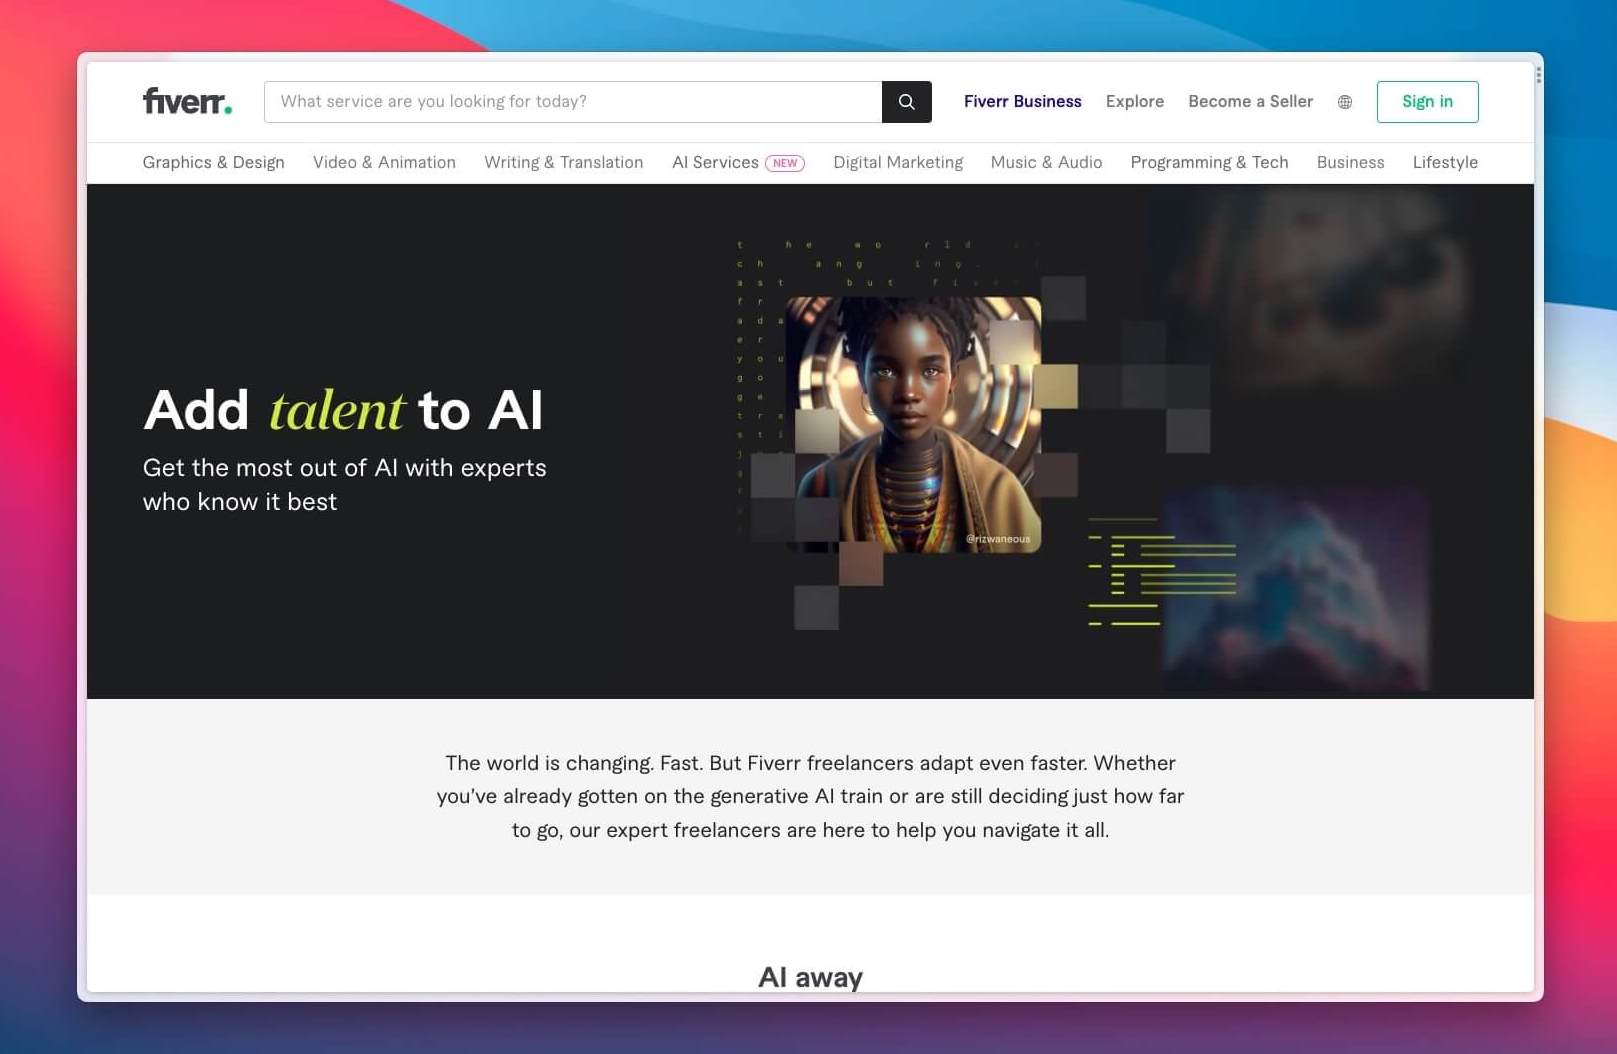 Fiverr's AI services page